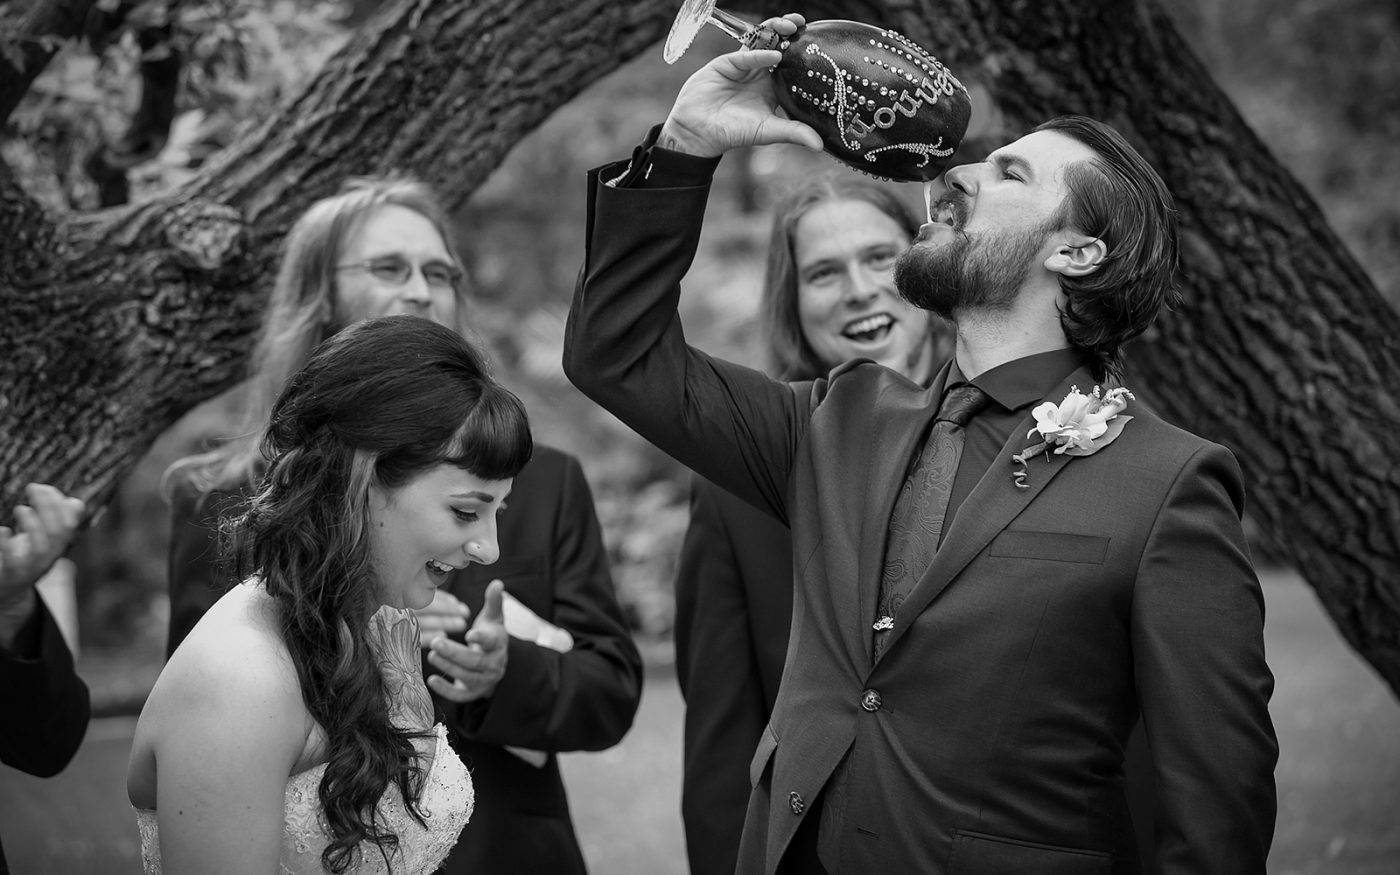 Derek drinking a beer to seal their wedding